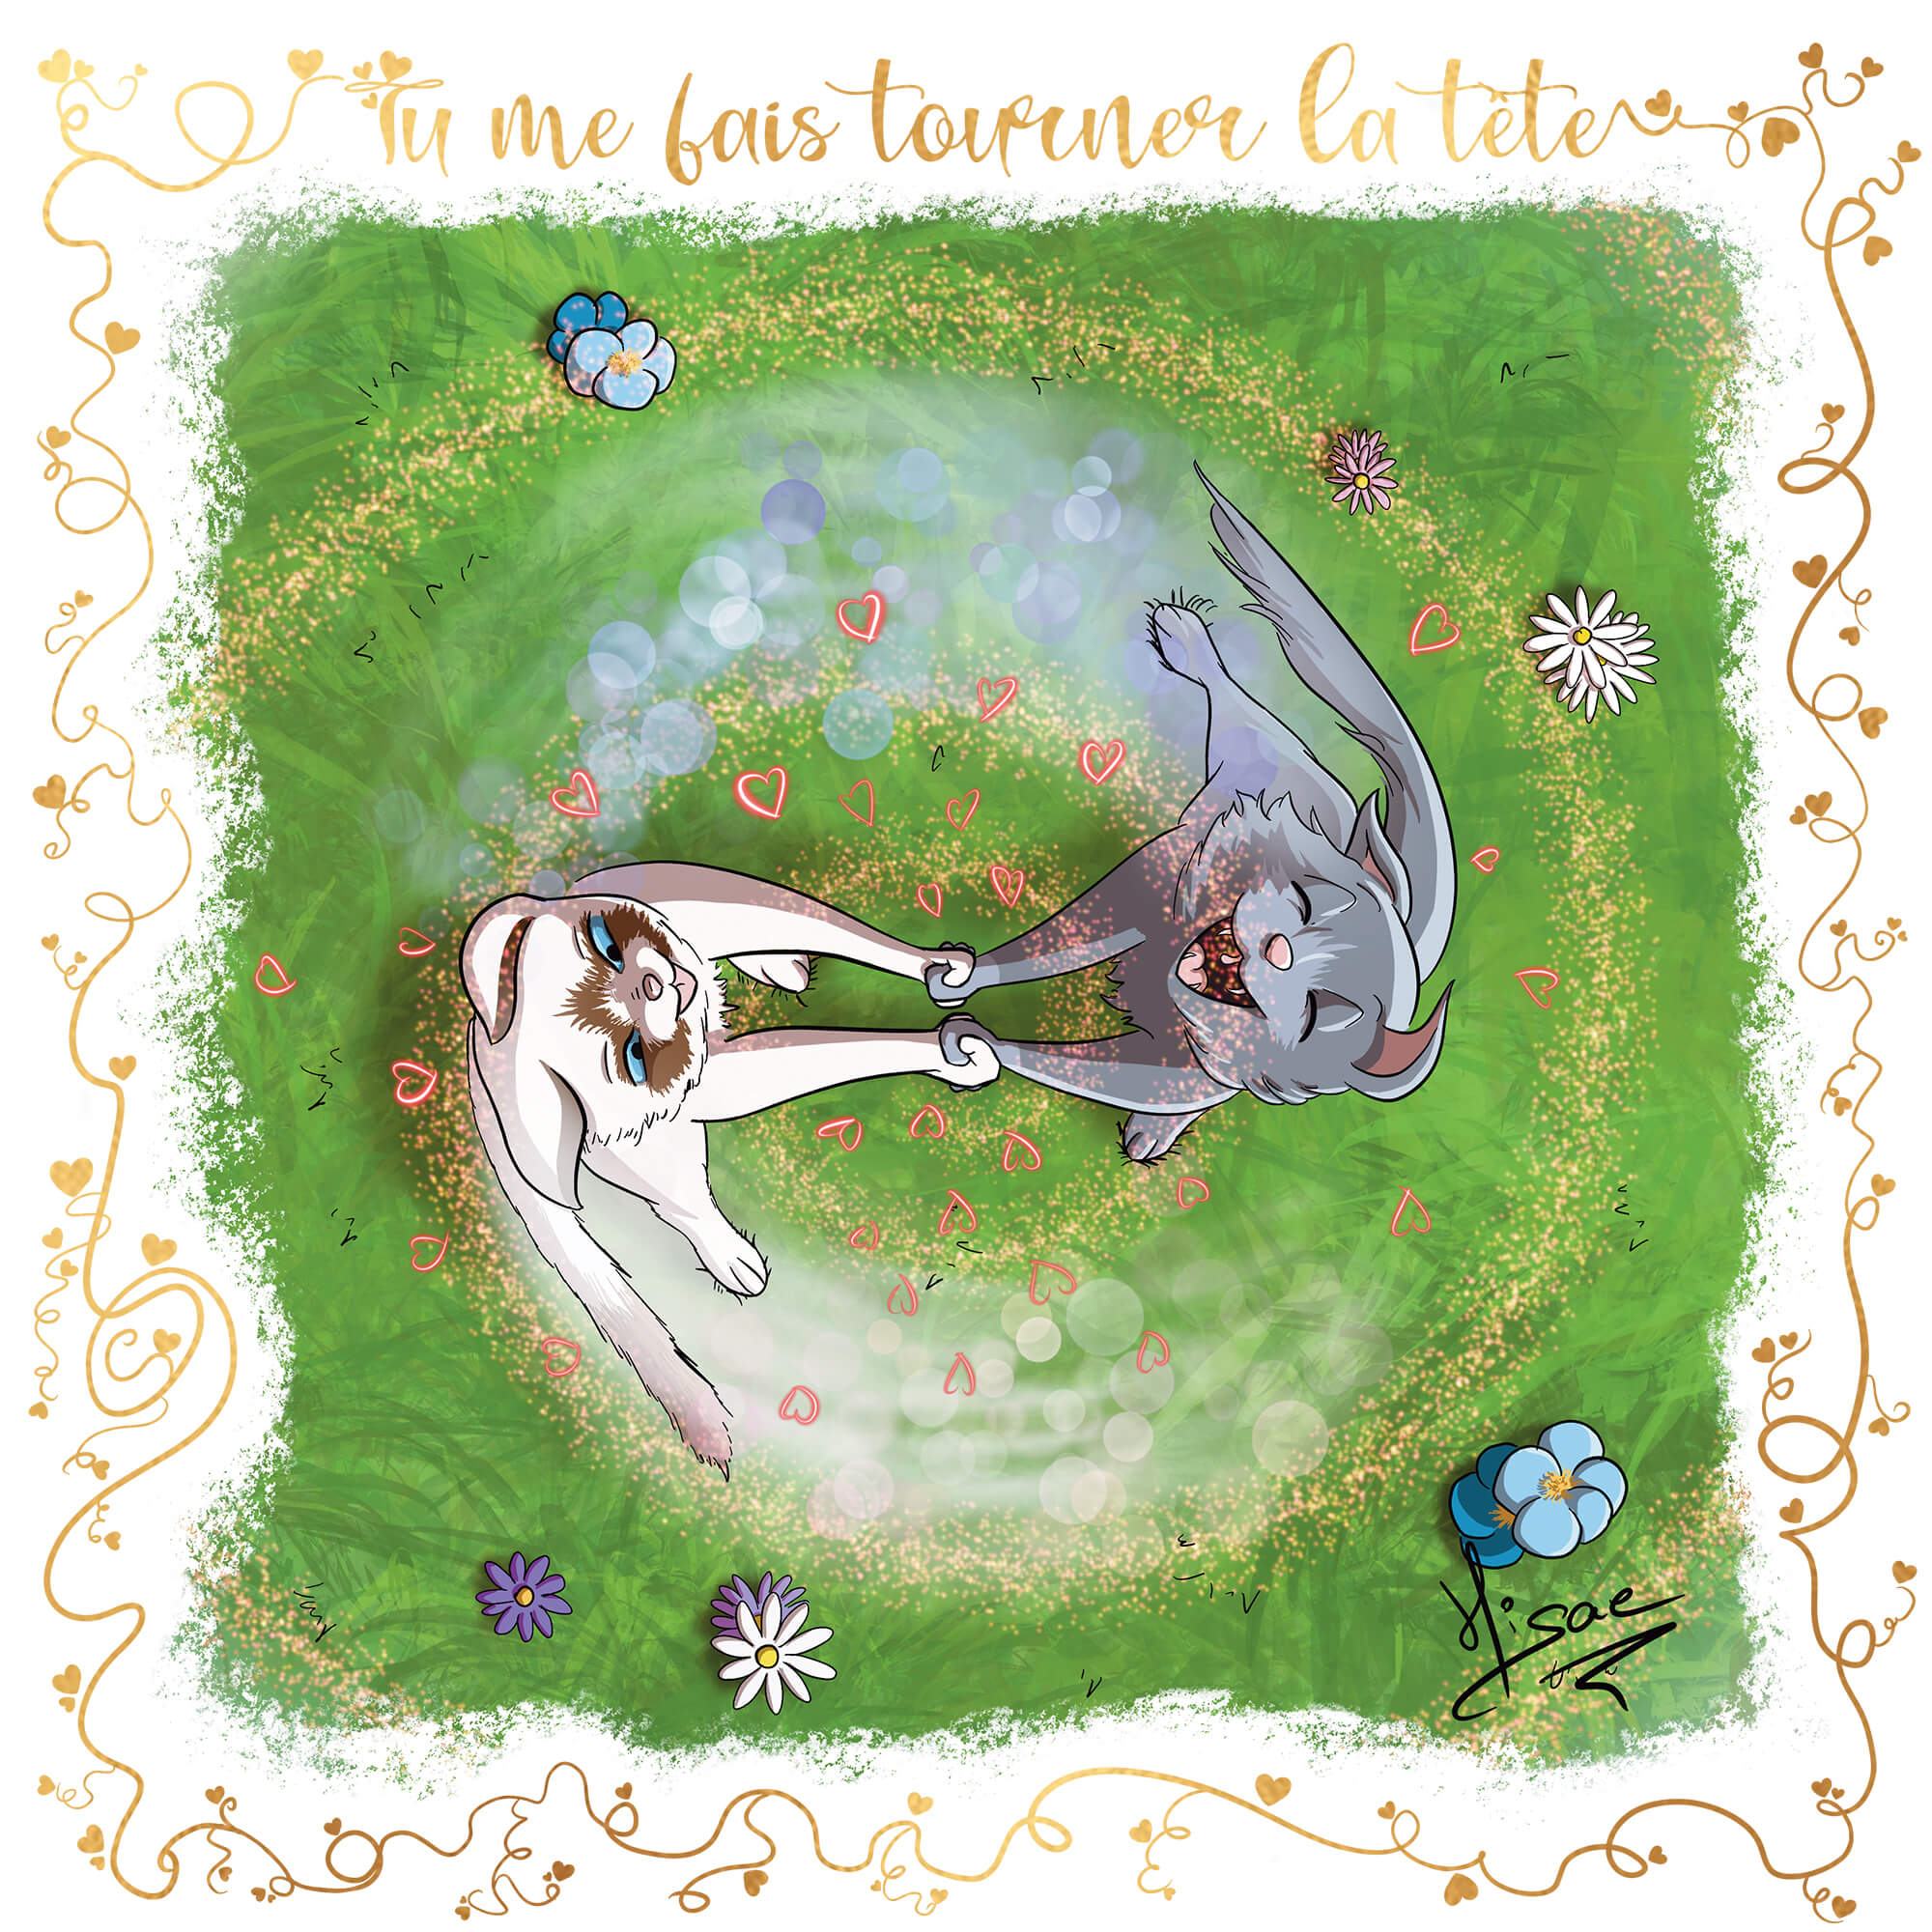 Dessin numérique format carte postale pour la Saint-valentin représentant deux chats amoureux dansant dans un pré ©Hisae illustrations